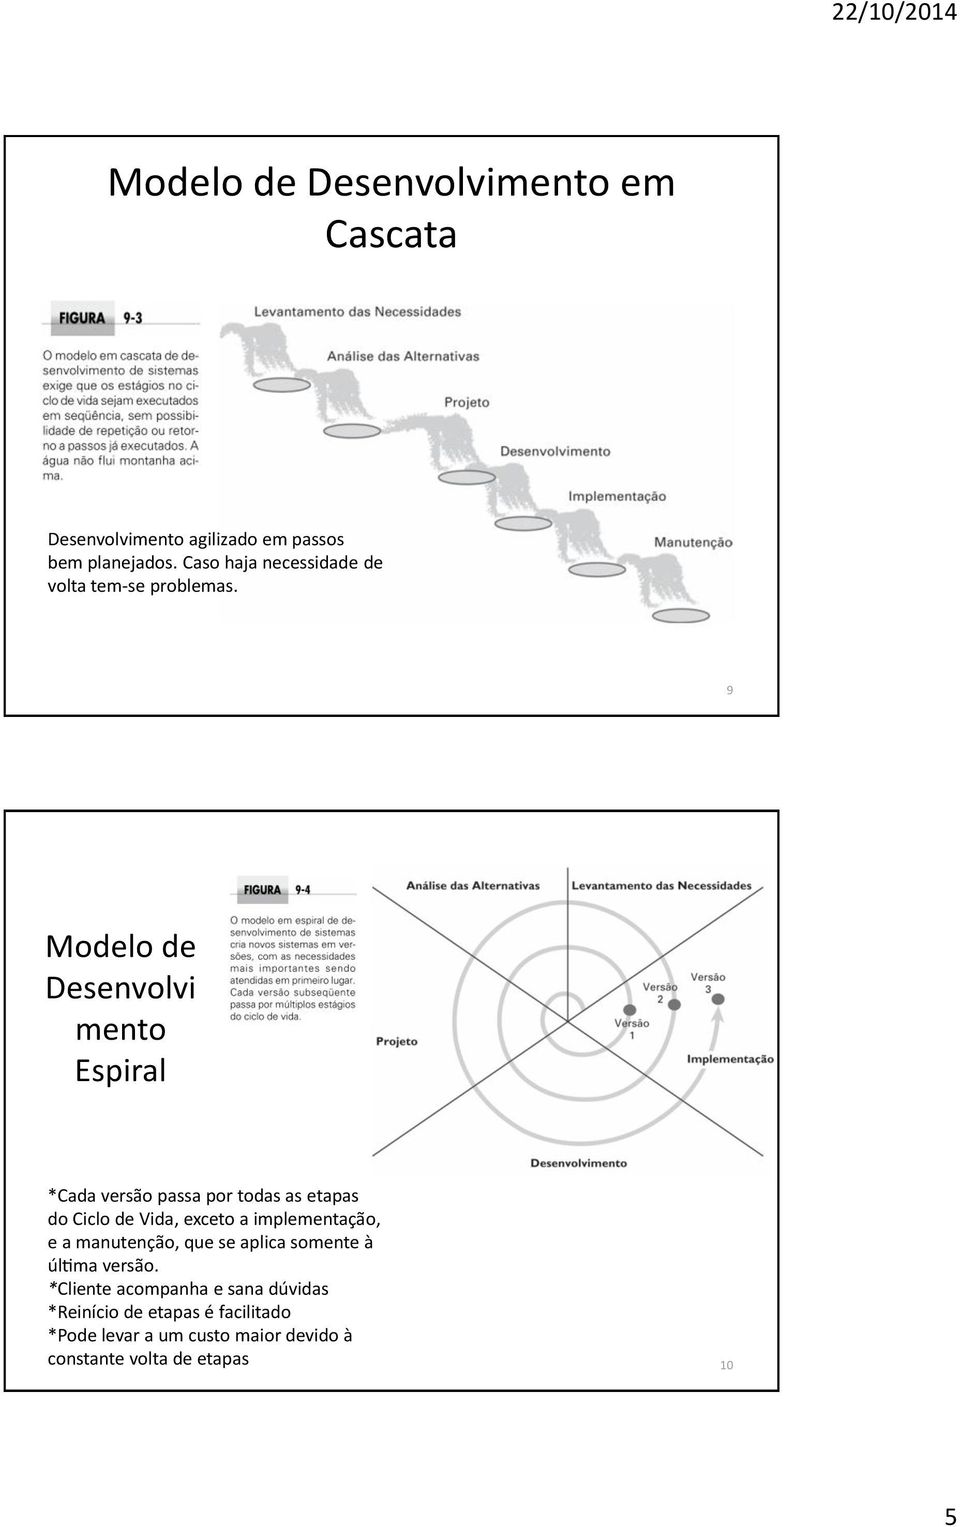 9 Modelo de Desenvolvi mento Espiral *Cada versa o passa por todas as etapas do Ciclo de Vida, exceto a